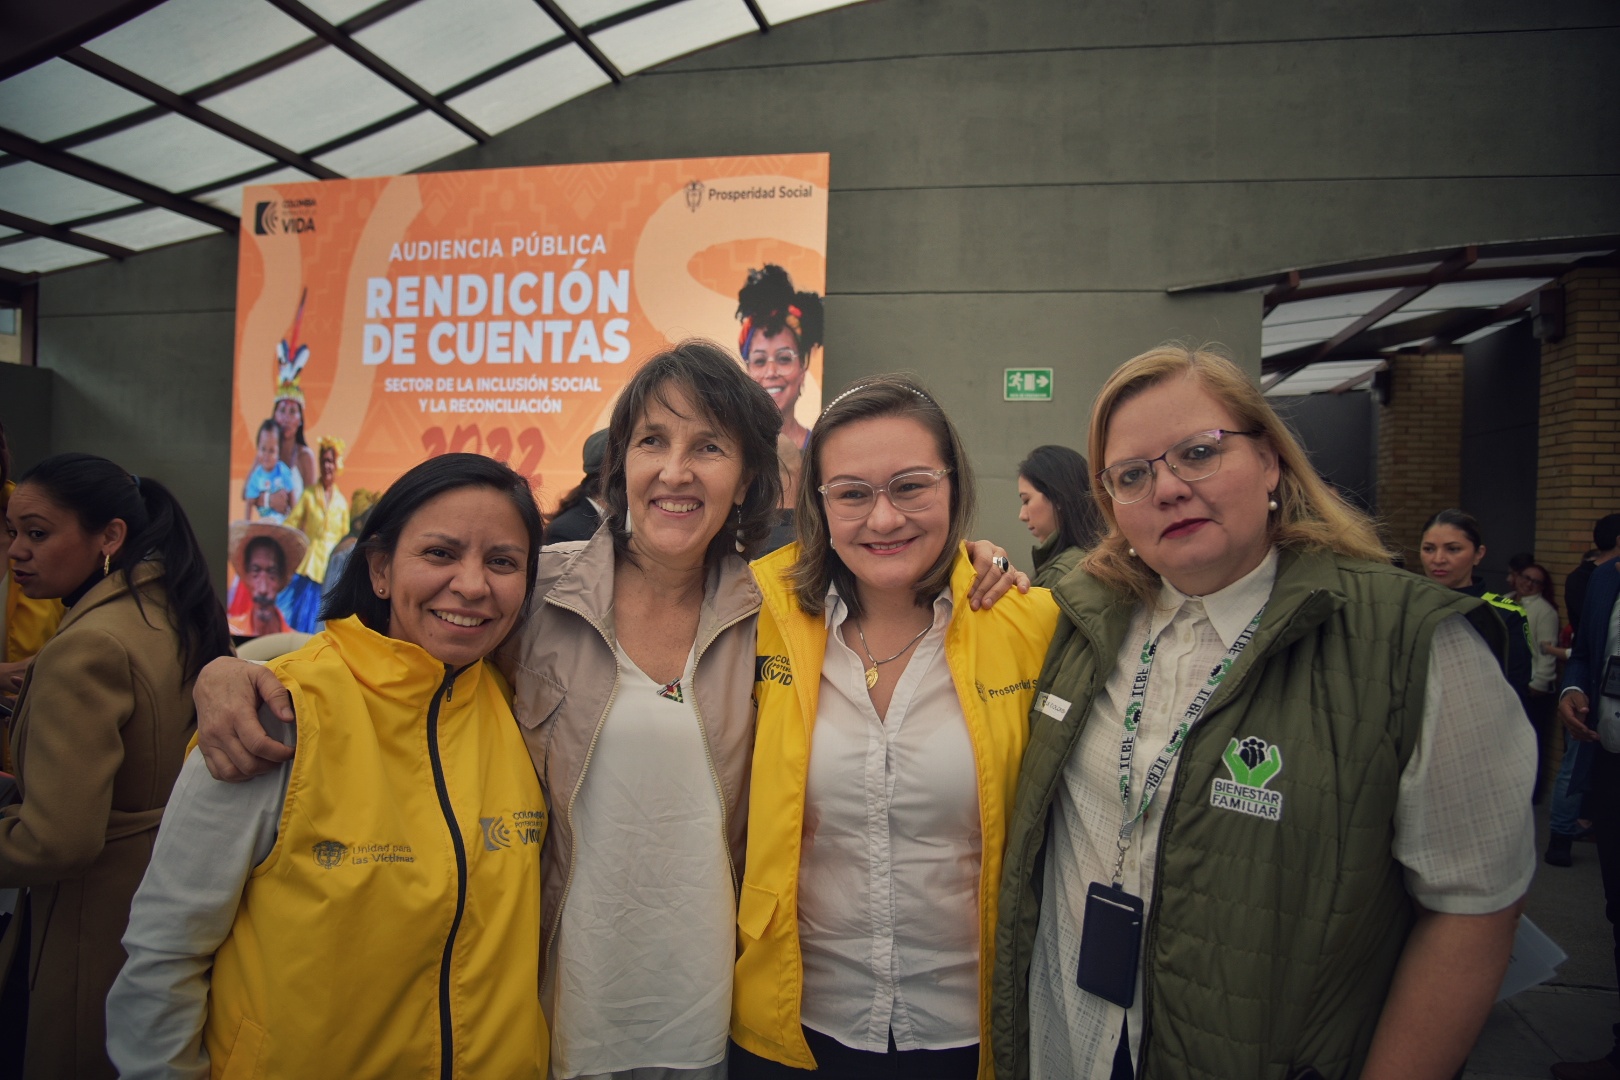 De izquierda a derecha: Patricia Tobón, directora de la UARIV; María Gaitán, directora del CNMH; Cielo Rusinque, directora de Prosperidad Social, y Astrid Cáceres, directora del ICBF.